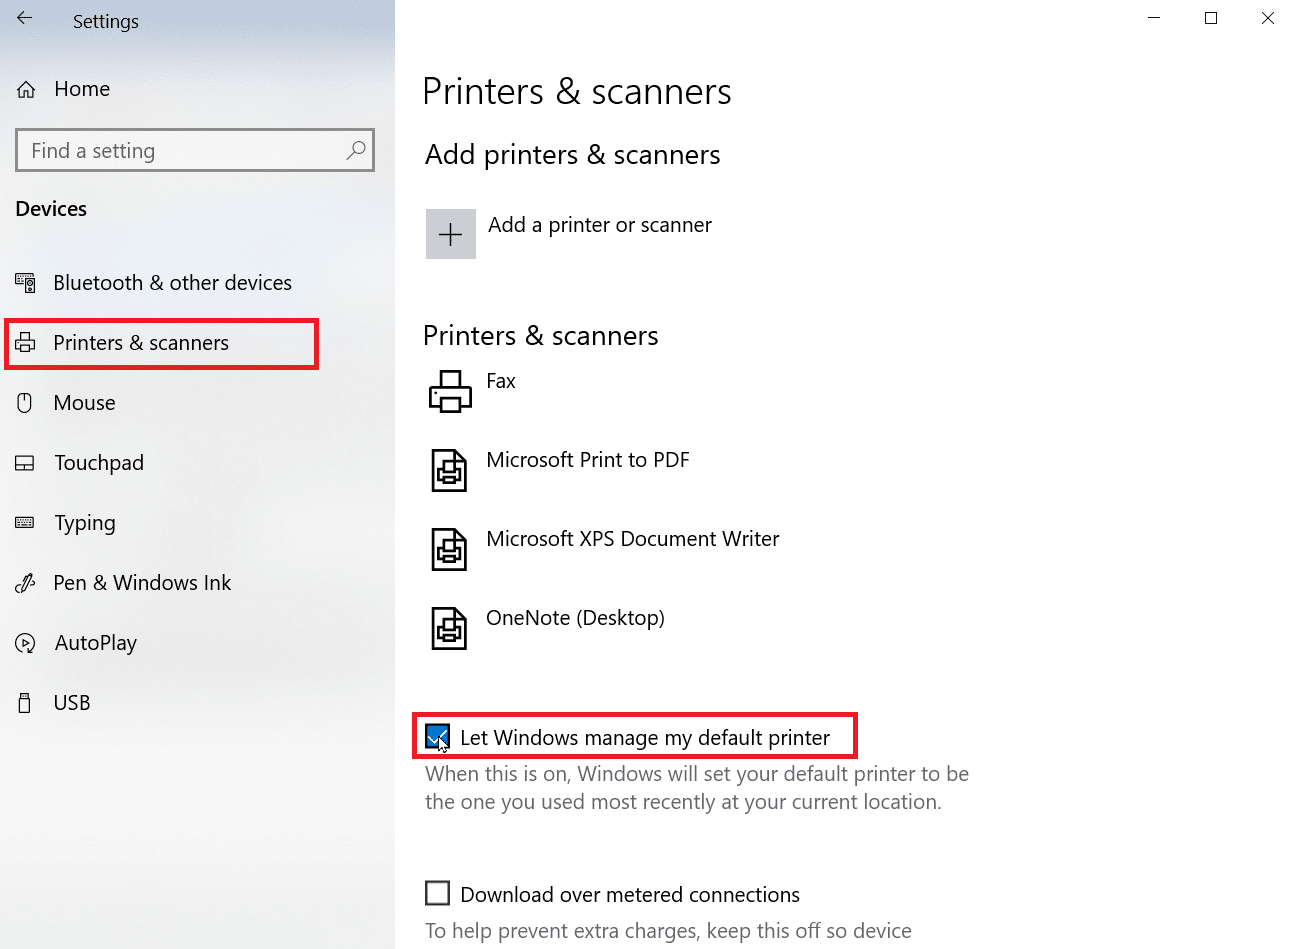 vá para impressoras e scanners e desmarque permitir que o Windows gerencie minha impressora padrão